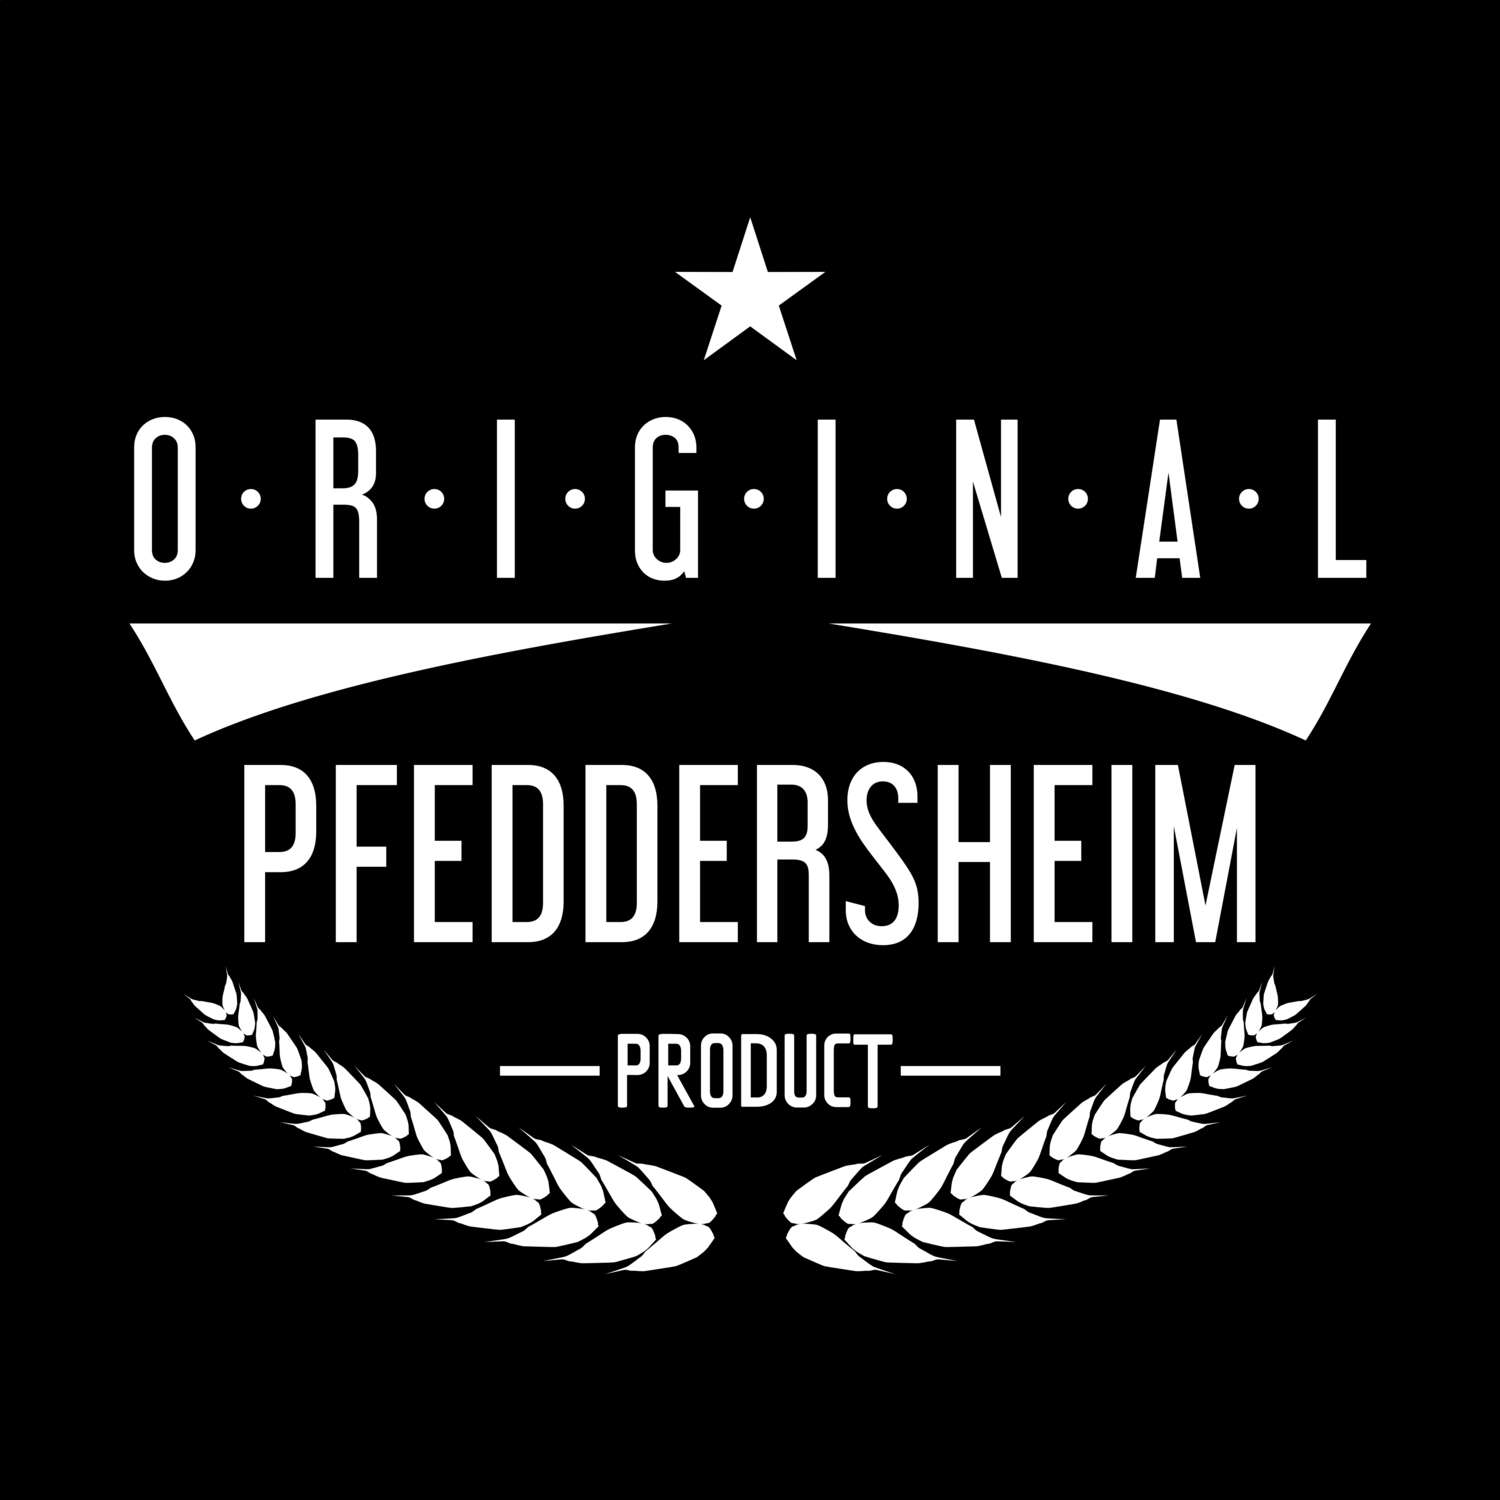 Pfeddersheim T-Shirt »Original Product«